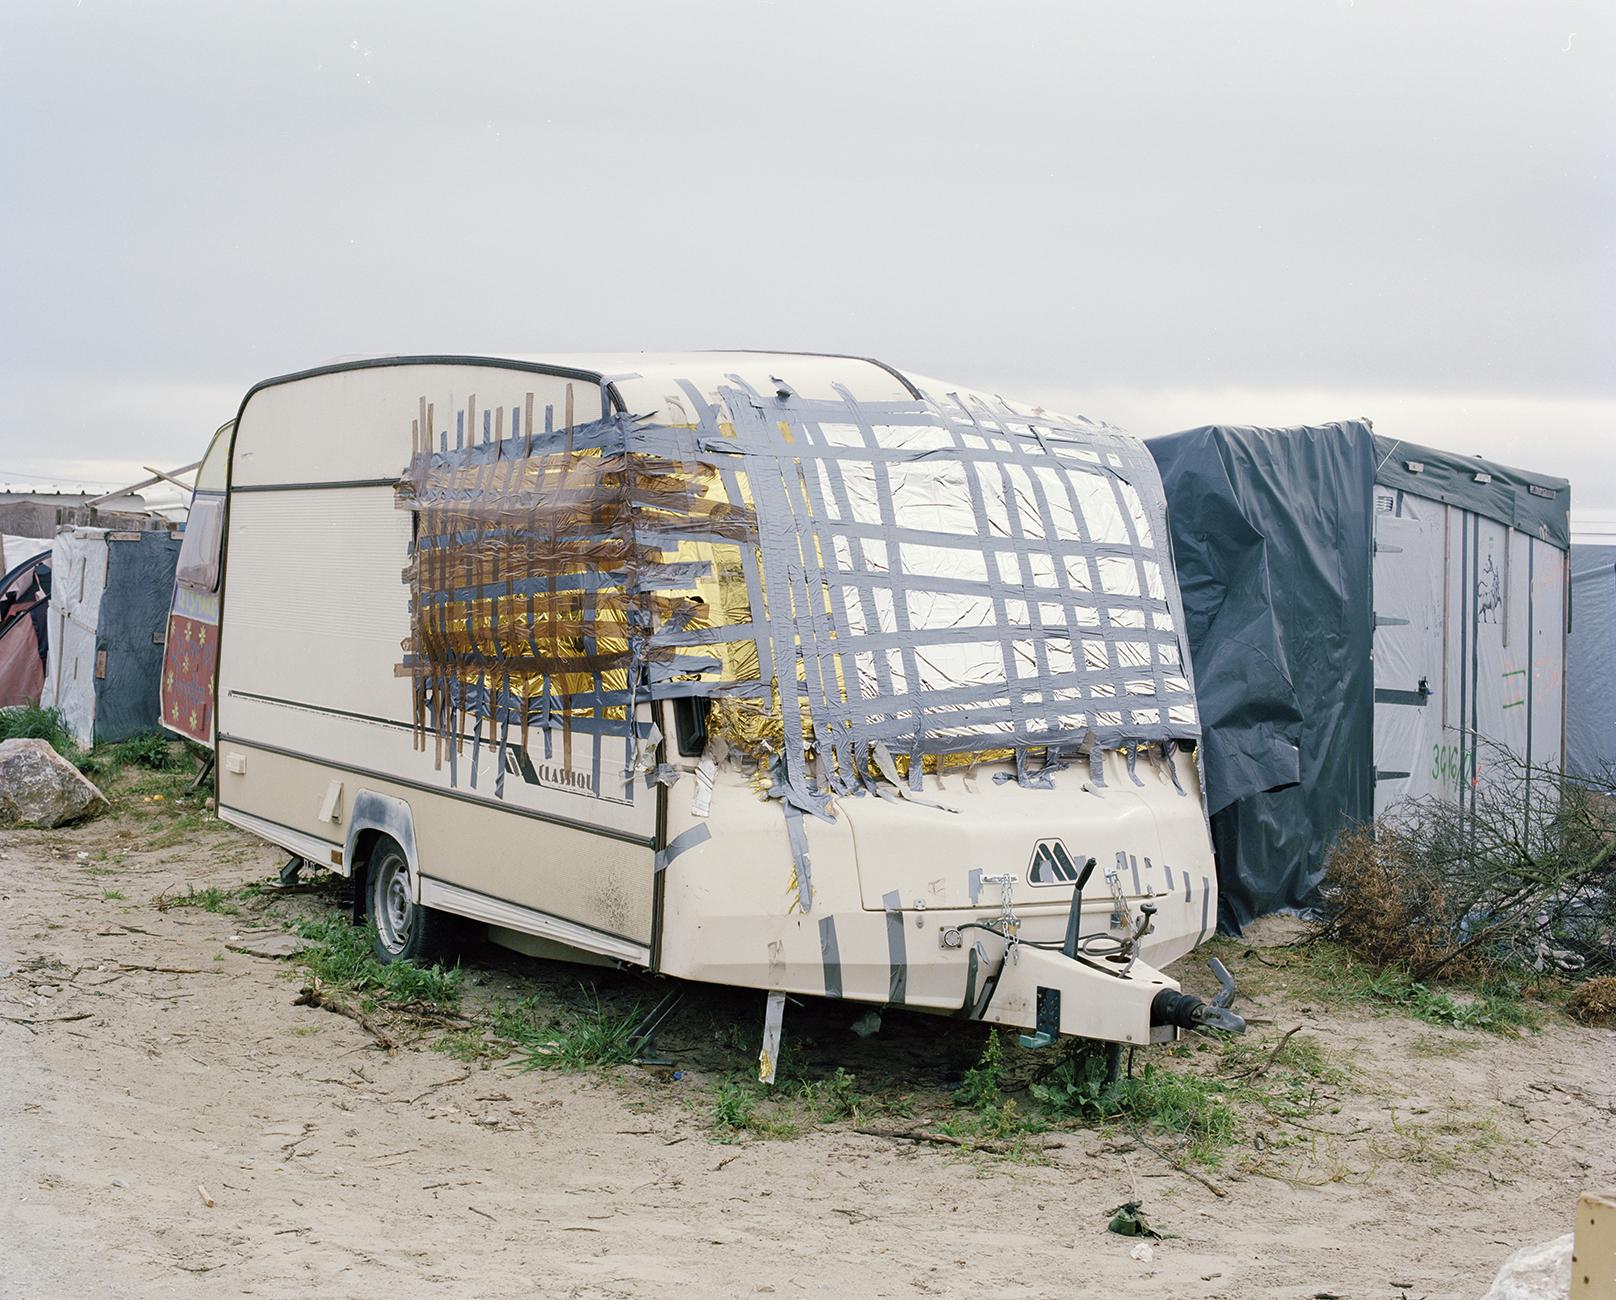 Élisa Larvego, Chemin des Dunes, caravane survie, Calais, 2018. [Centre de la Photographie - Elisa Larvego]